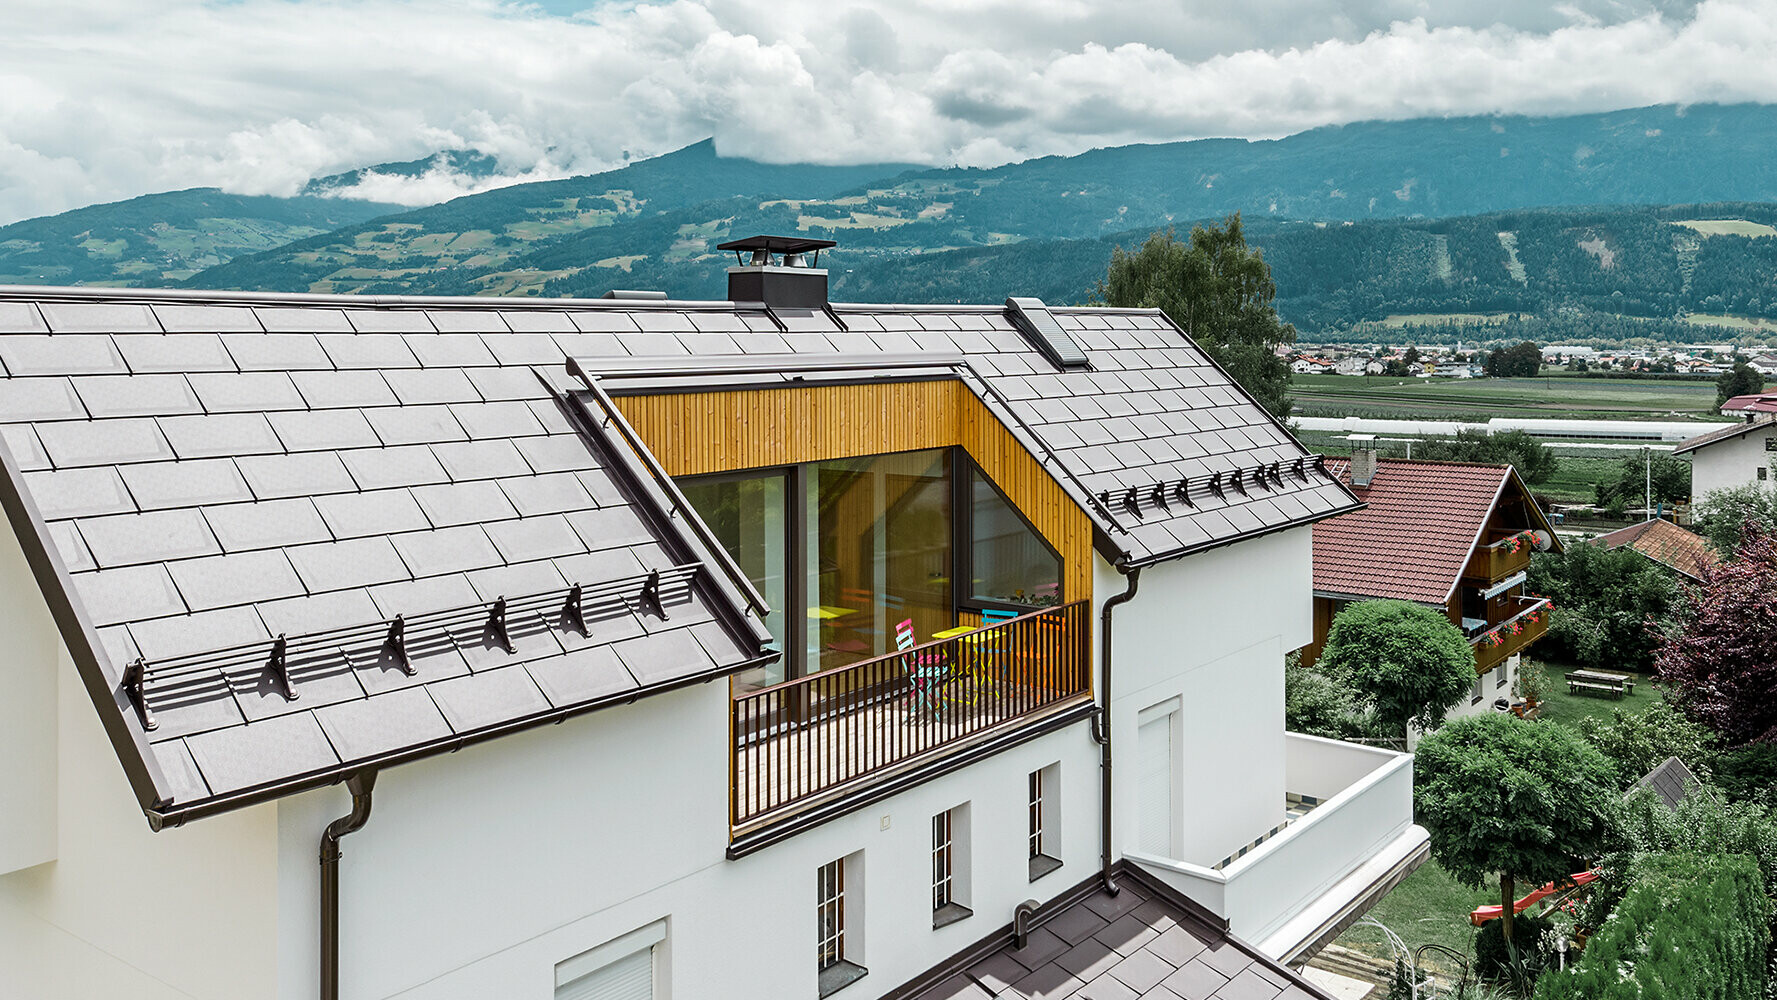 Bostadshus med ljus putsfasad, stor balkong och taktäckning med PREFAs takplattor R.16 i färgen nötbrun.